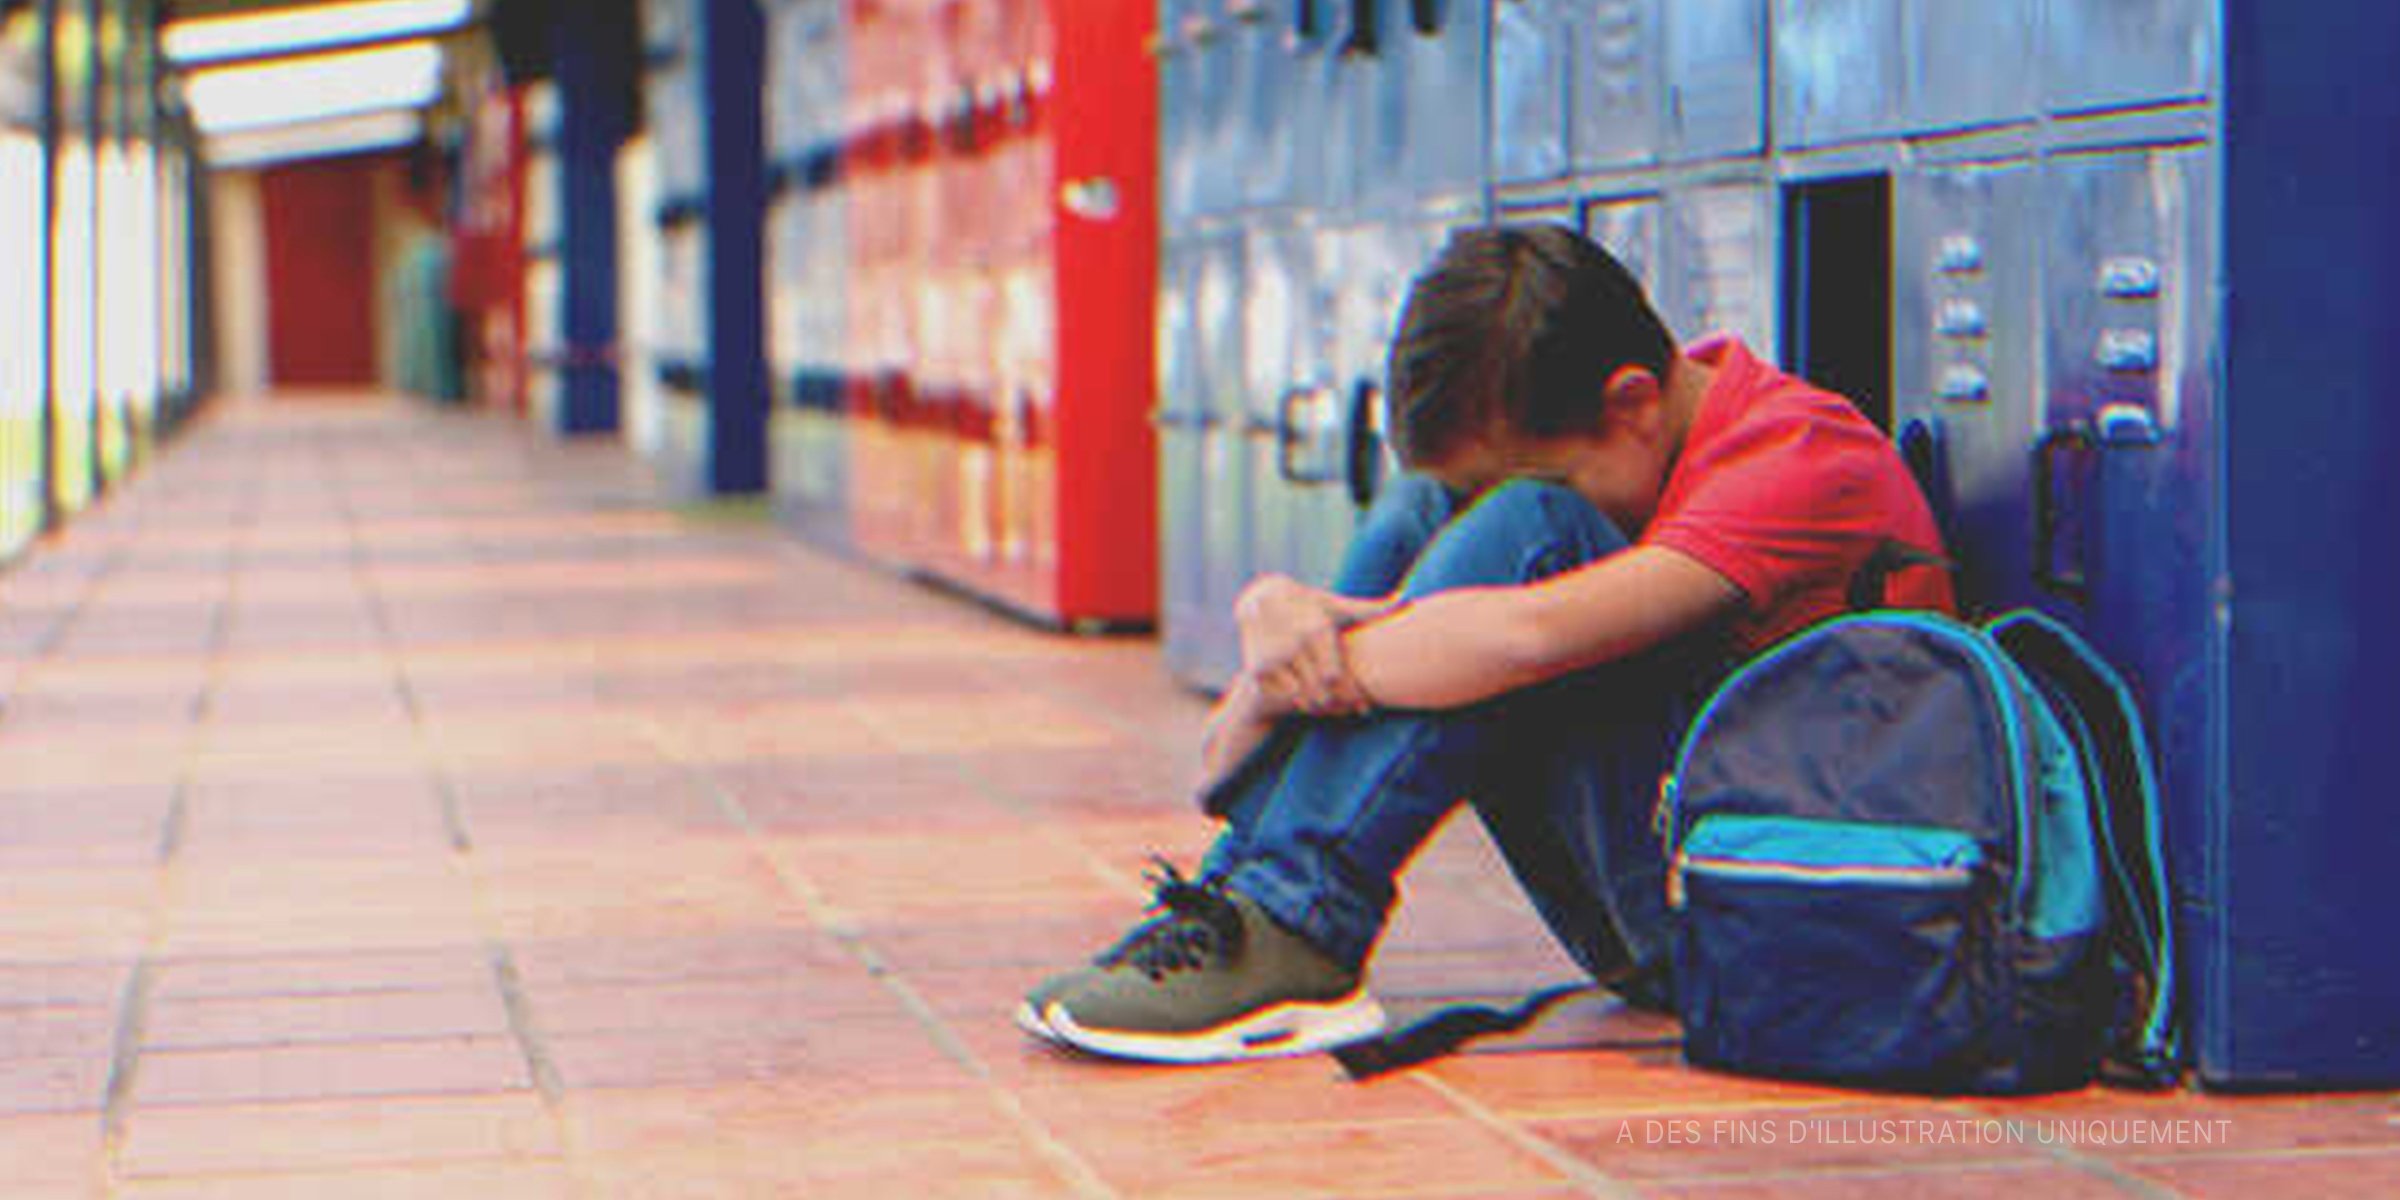 Un garçon riche se moque d'un camarade de classe pauvre | Source : Getty Images